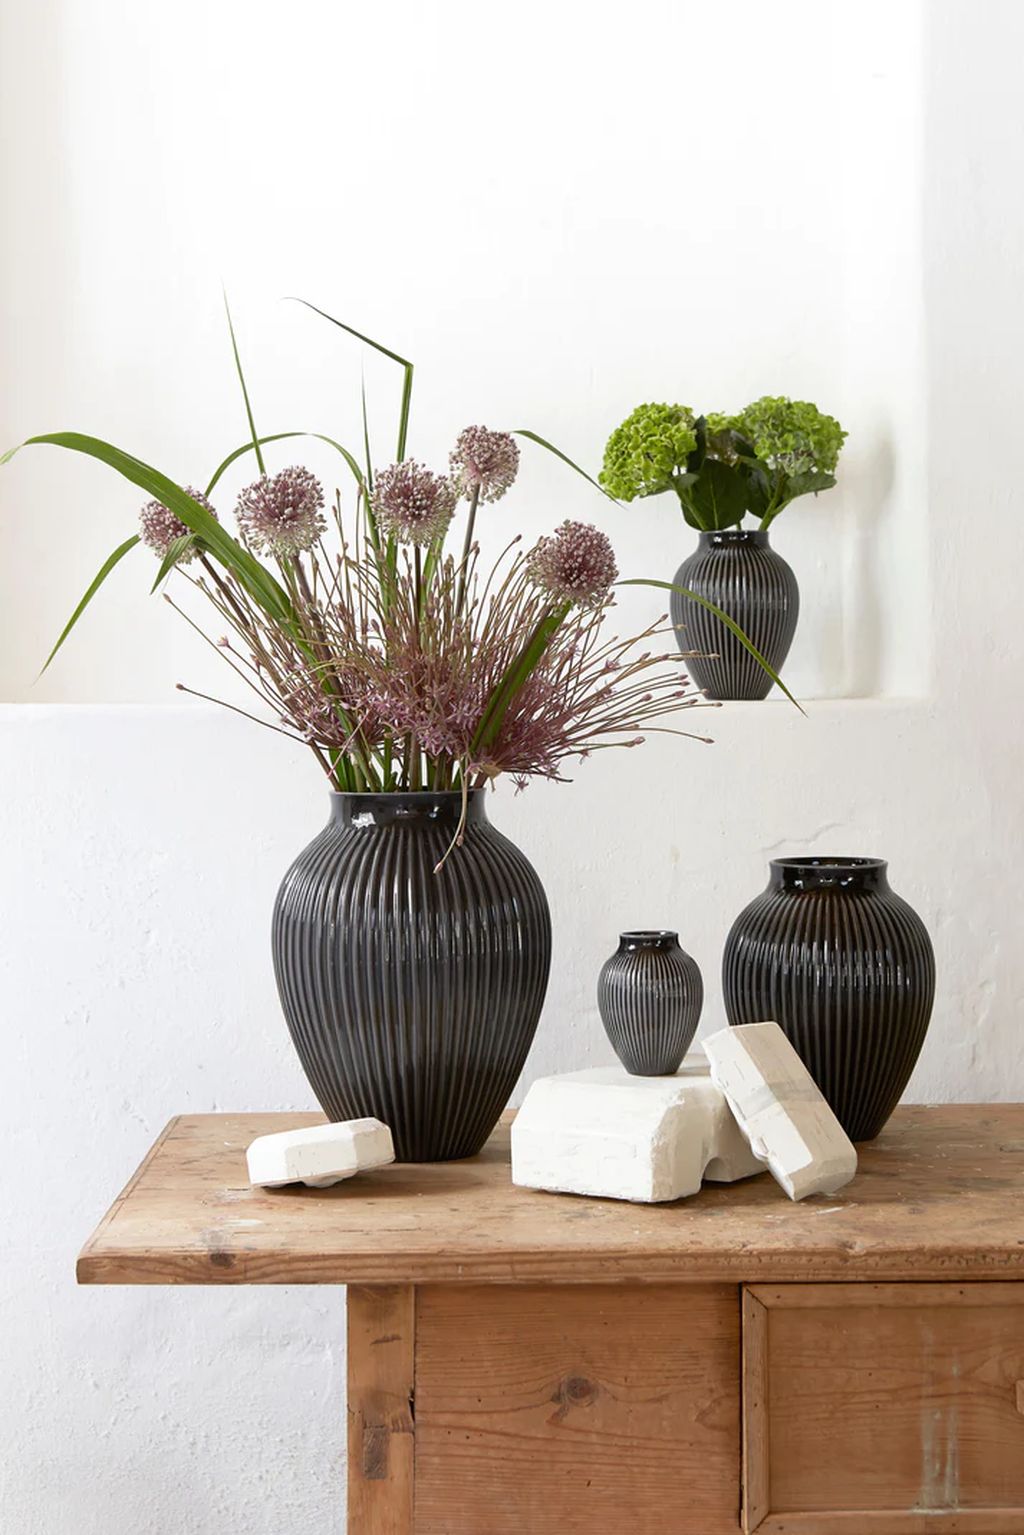 Knabstrup Keramik Vase avec rainures h 12,5 cm, noir